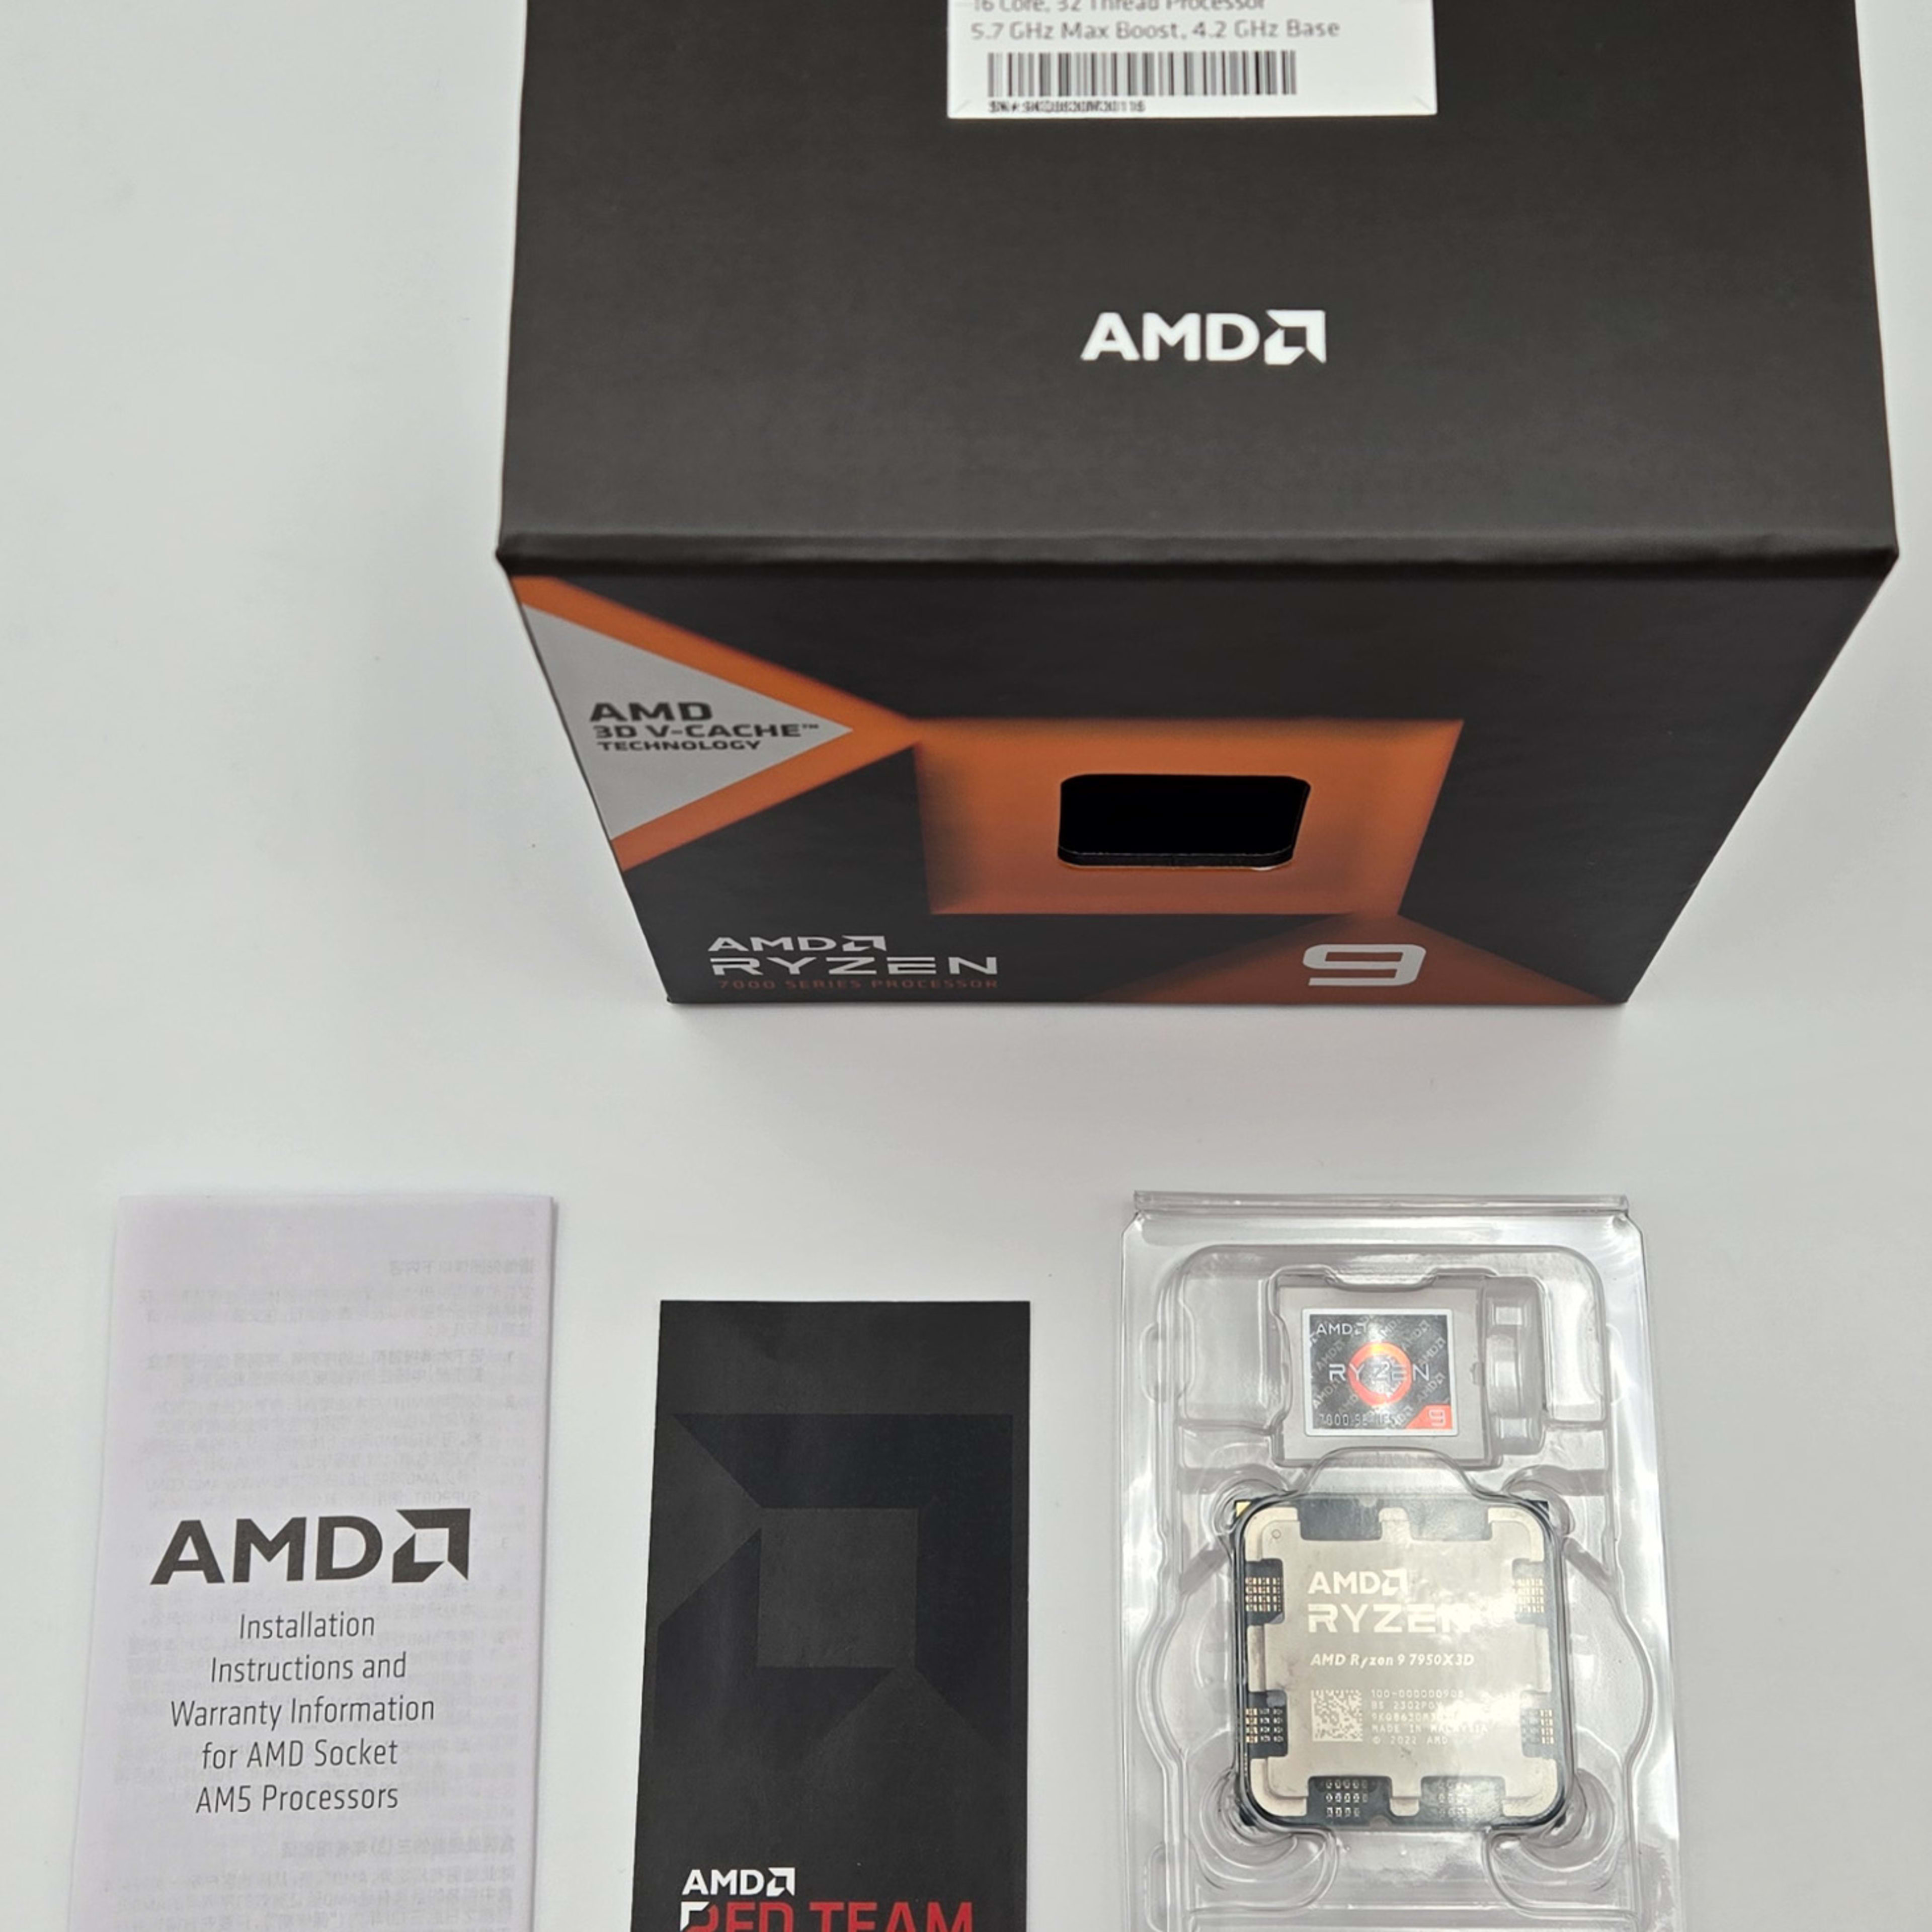 AMD Ryzen 9 7950X3D w/ Radeon Graphics, 16 Core, 32 Thread, 5.7GHz Max, 4.2Ghz Base